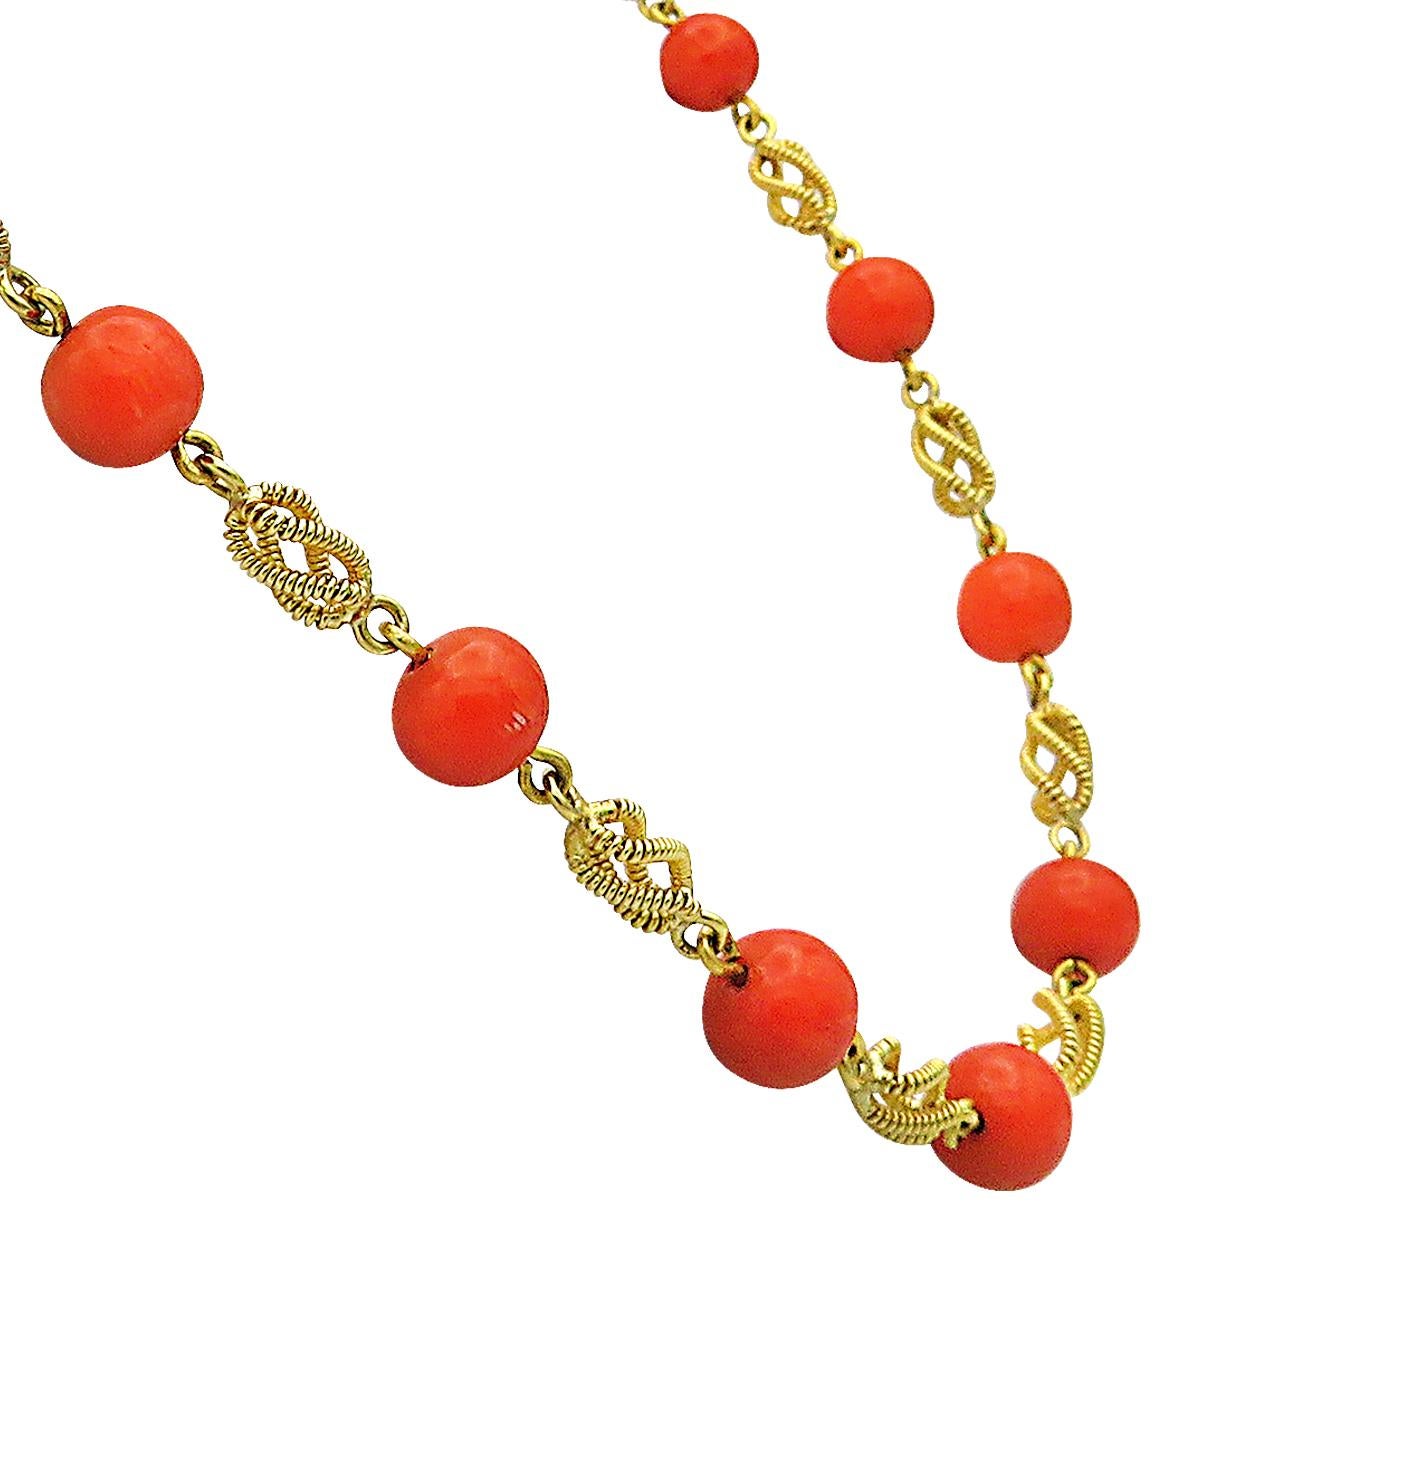 Einzigartige italienische Korallenkette und Lapislazuli-Halskette mit 18-karätigen Goldwirbeln, die 7,8 mm bis 8,7 mm große italienische Korallenperlen und Lapislazuli-Perlen verbinden. Die Gesamtlänge der italienischen roten Korallenkette beträgt